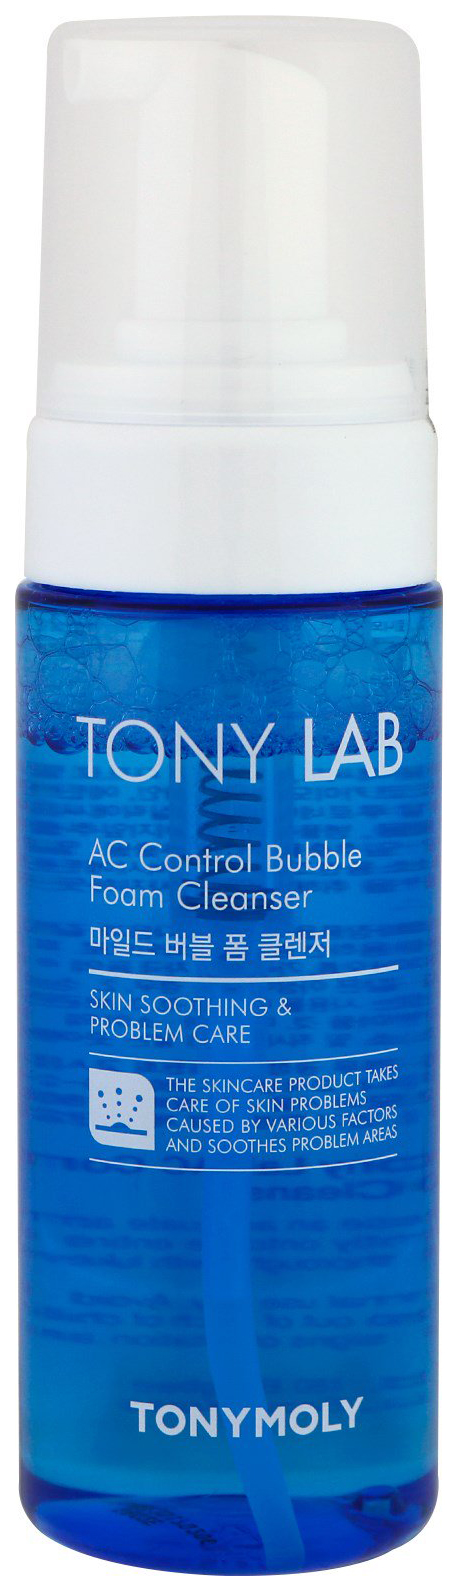 Пенка для умывания Tony Moly Tony Lab AC Control Bubble Foam Cleanser 150 мл